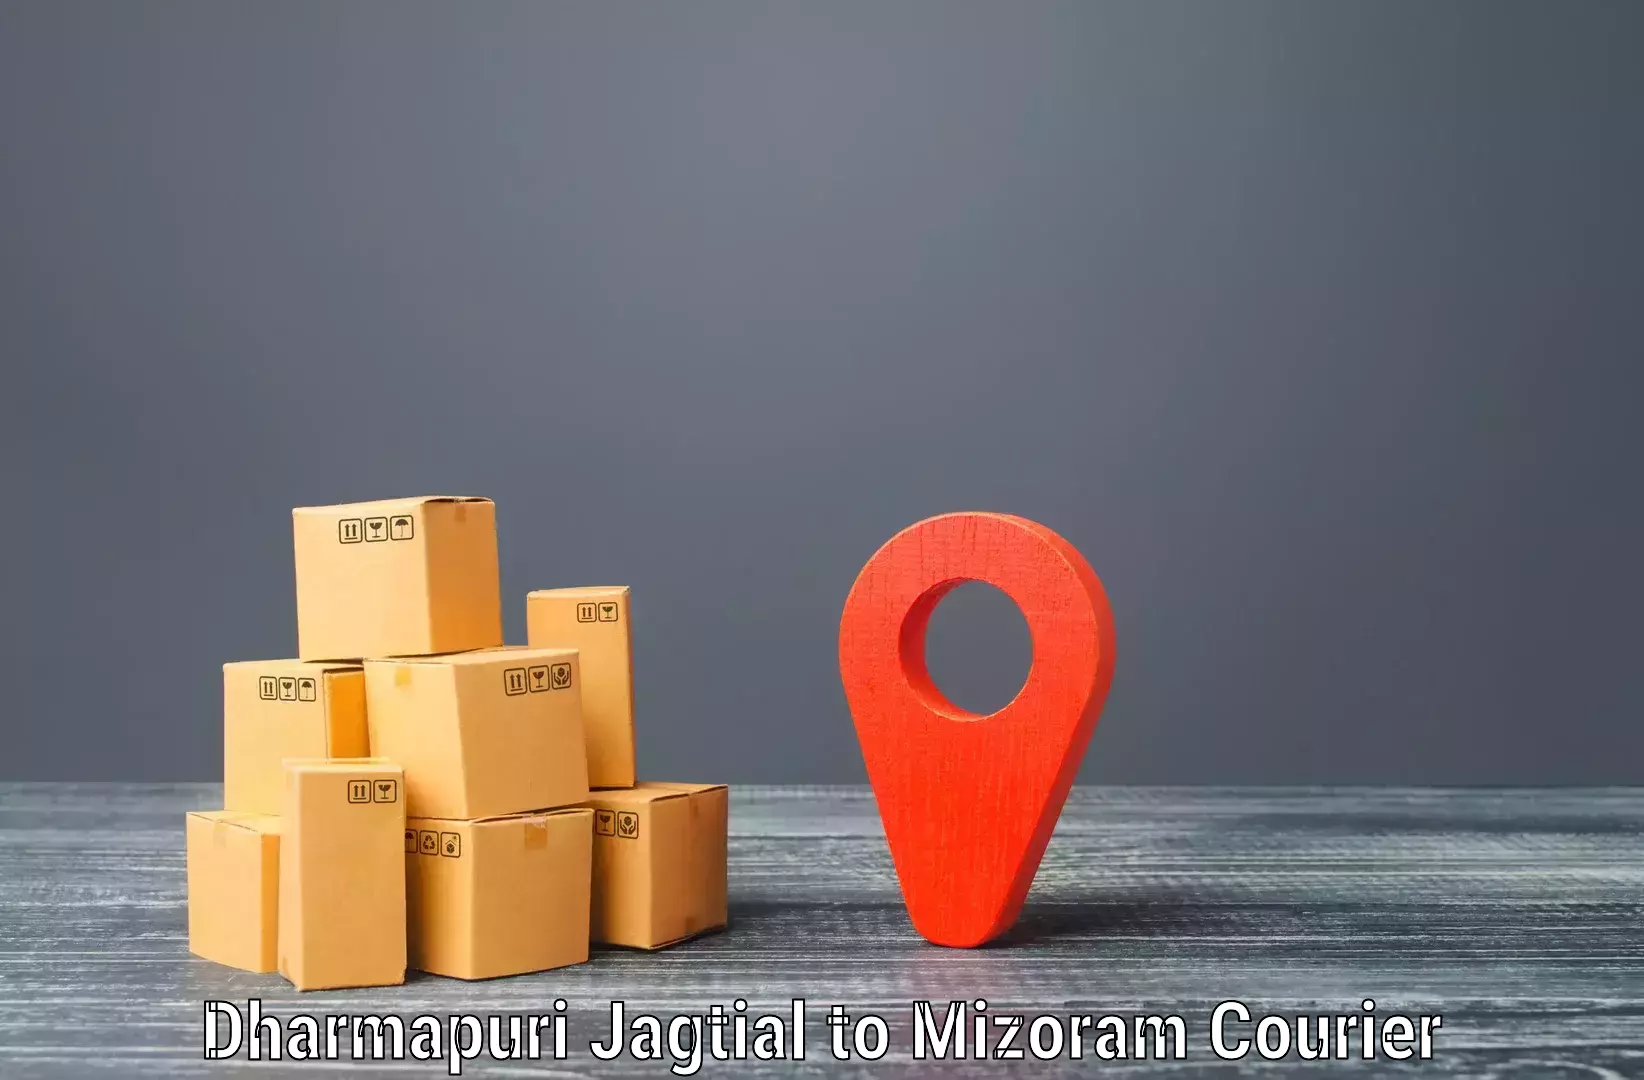 Door-to-door shipment Dharmapuri Jagtial to Aizawl